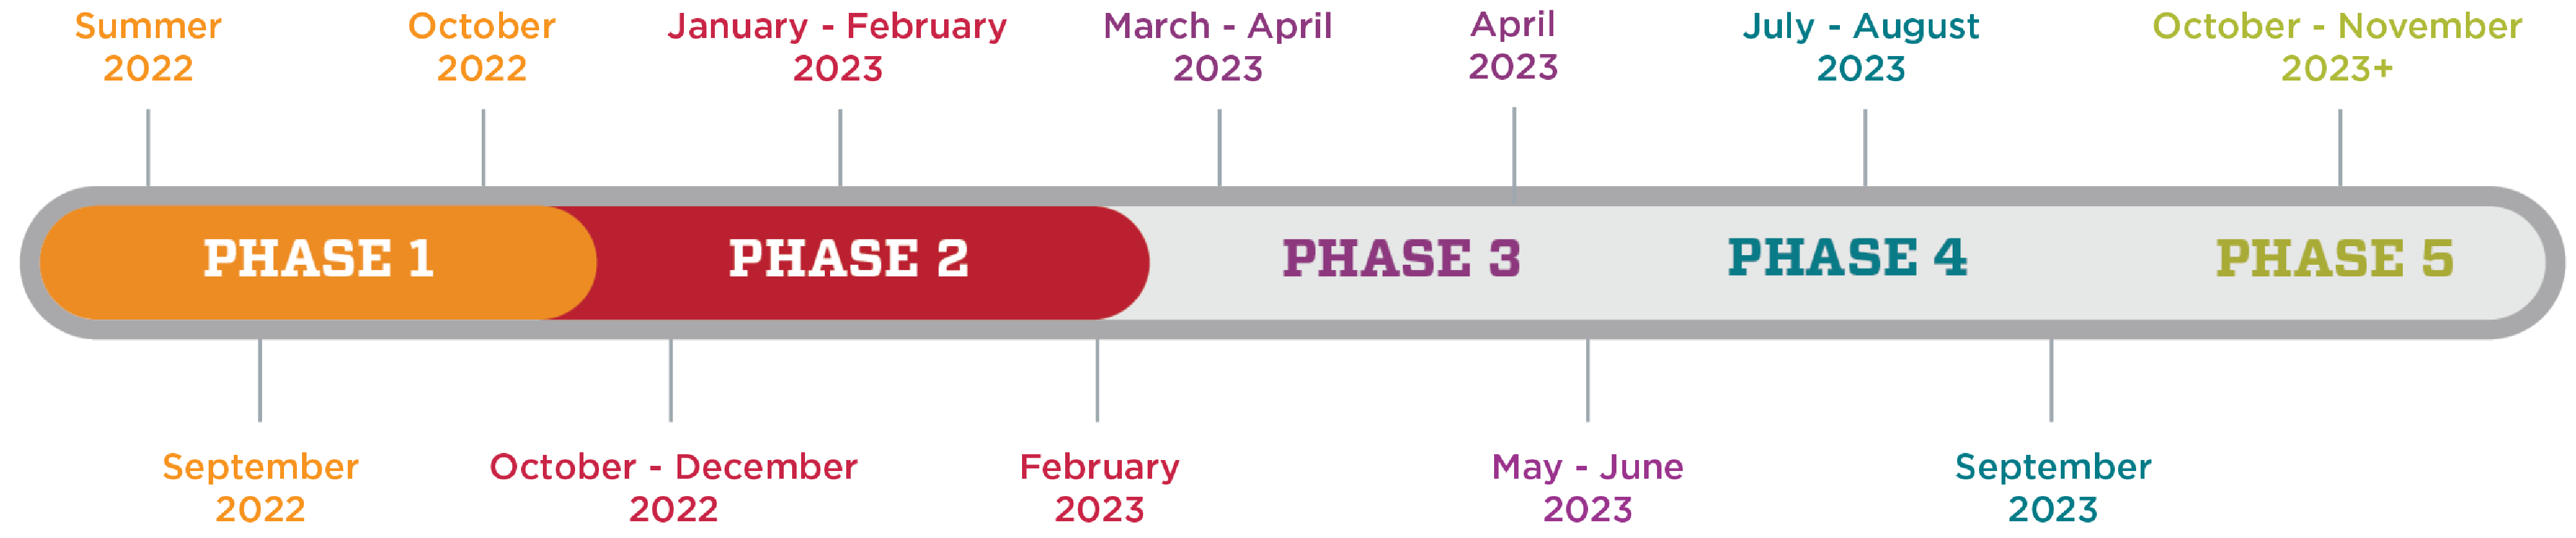 Un grafico che mostra la sequenza temporale dell'indagine sul clima di HSC. La fase 1 va dall'estate 2022 a ottobre 2022. La fase 2 va da ottobre 2022 a febbraio 2023. La fase 3 va da marzo 2023 a giugno 2023. La fase 4 va da luglio 2023 a settembre 2023. La fase 5 va da ottobre 2023 in poi.